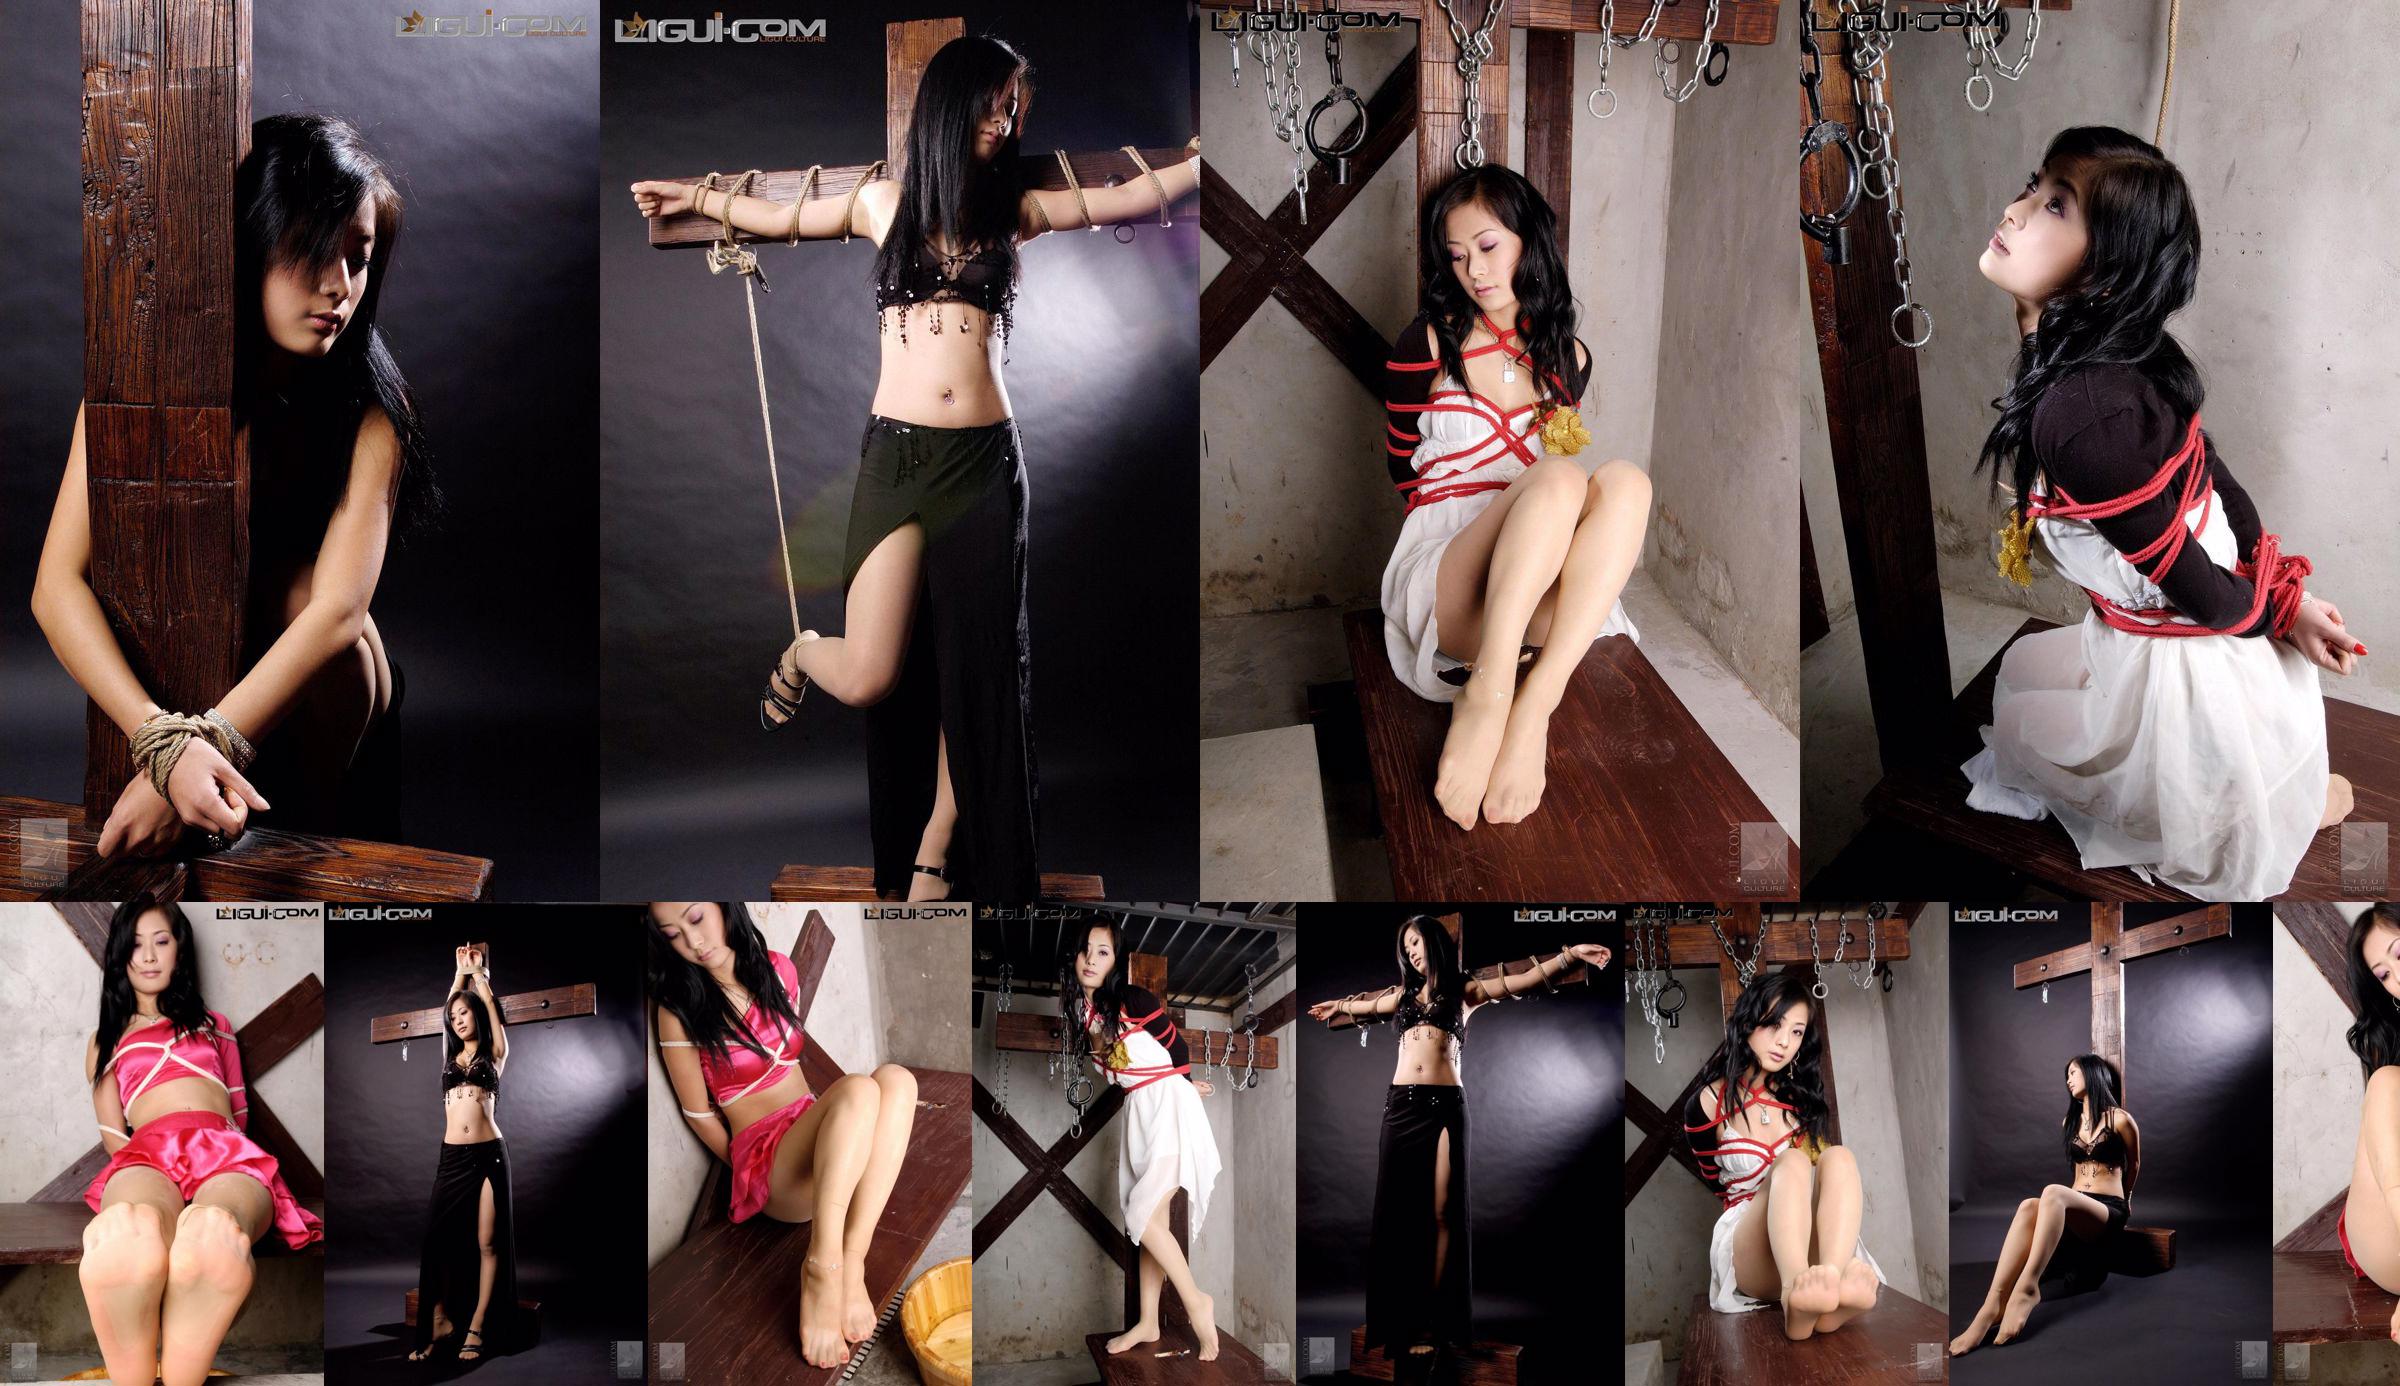 [Yuzumi Mitsuka LiGui] Zdjęcie modelki Saya „Związana czerwoną sznurem” Piękne nogi i nefrytowe stopy Zdjęcie No.457856 Strona 14